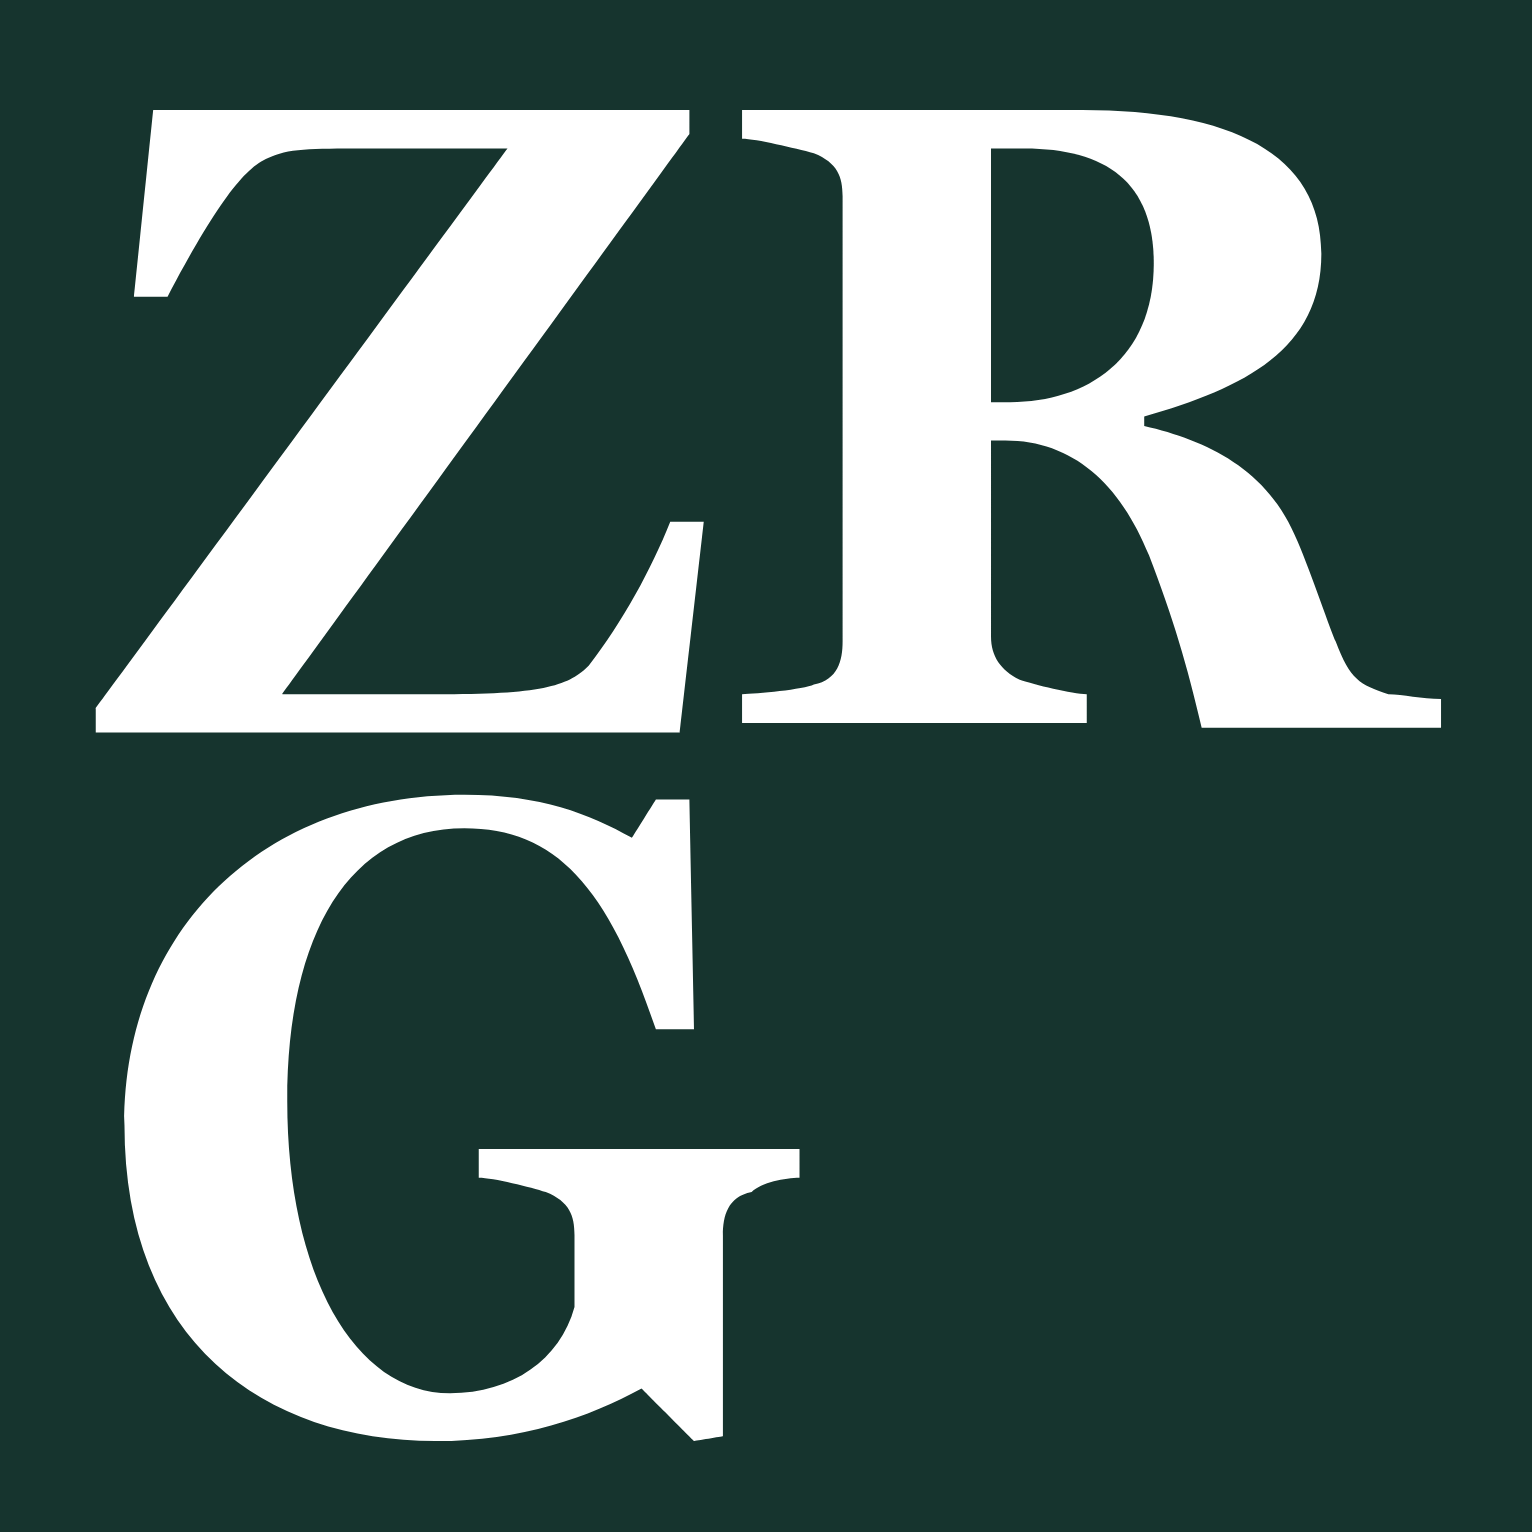 Zur Rose Group logo (transparent PNG)